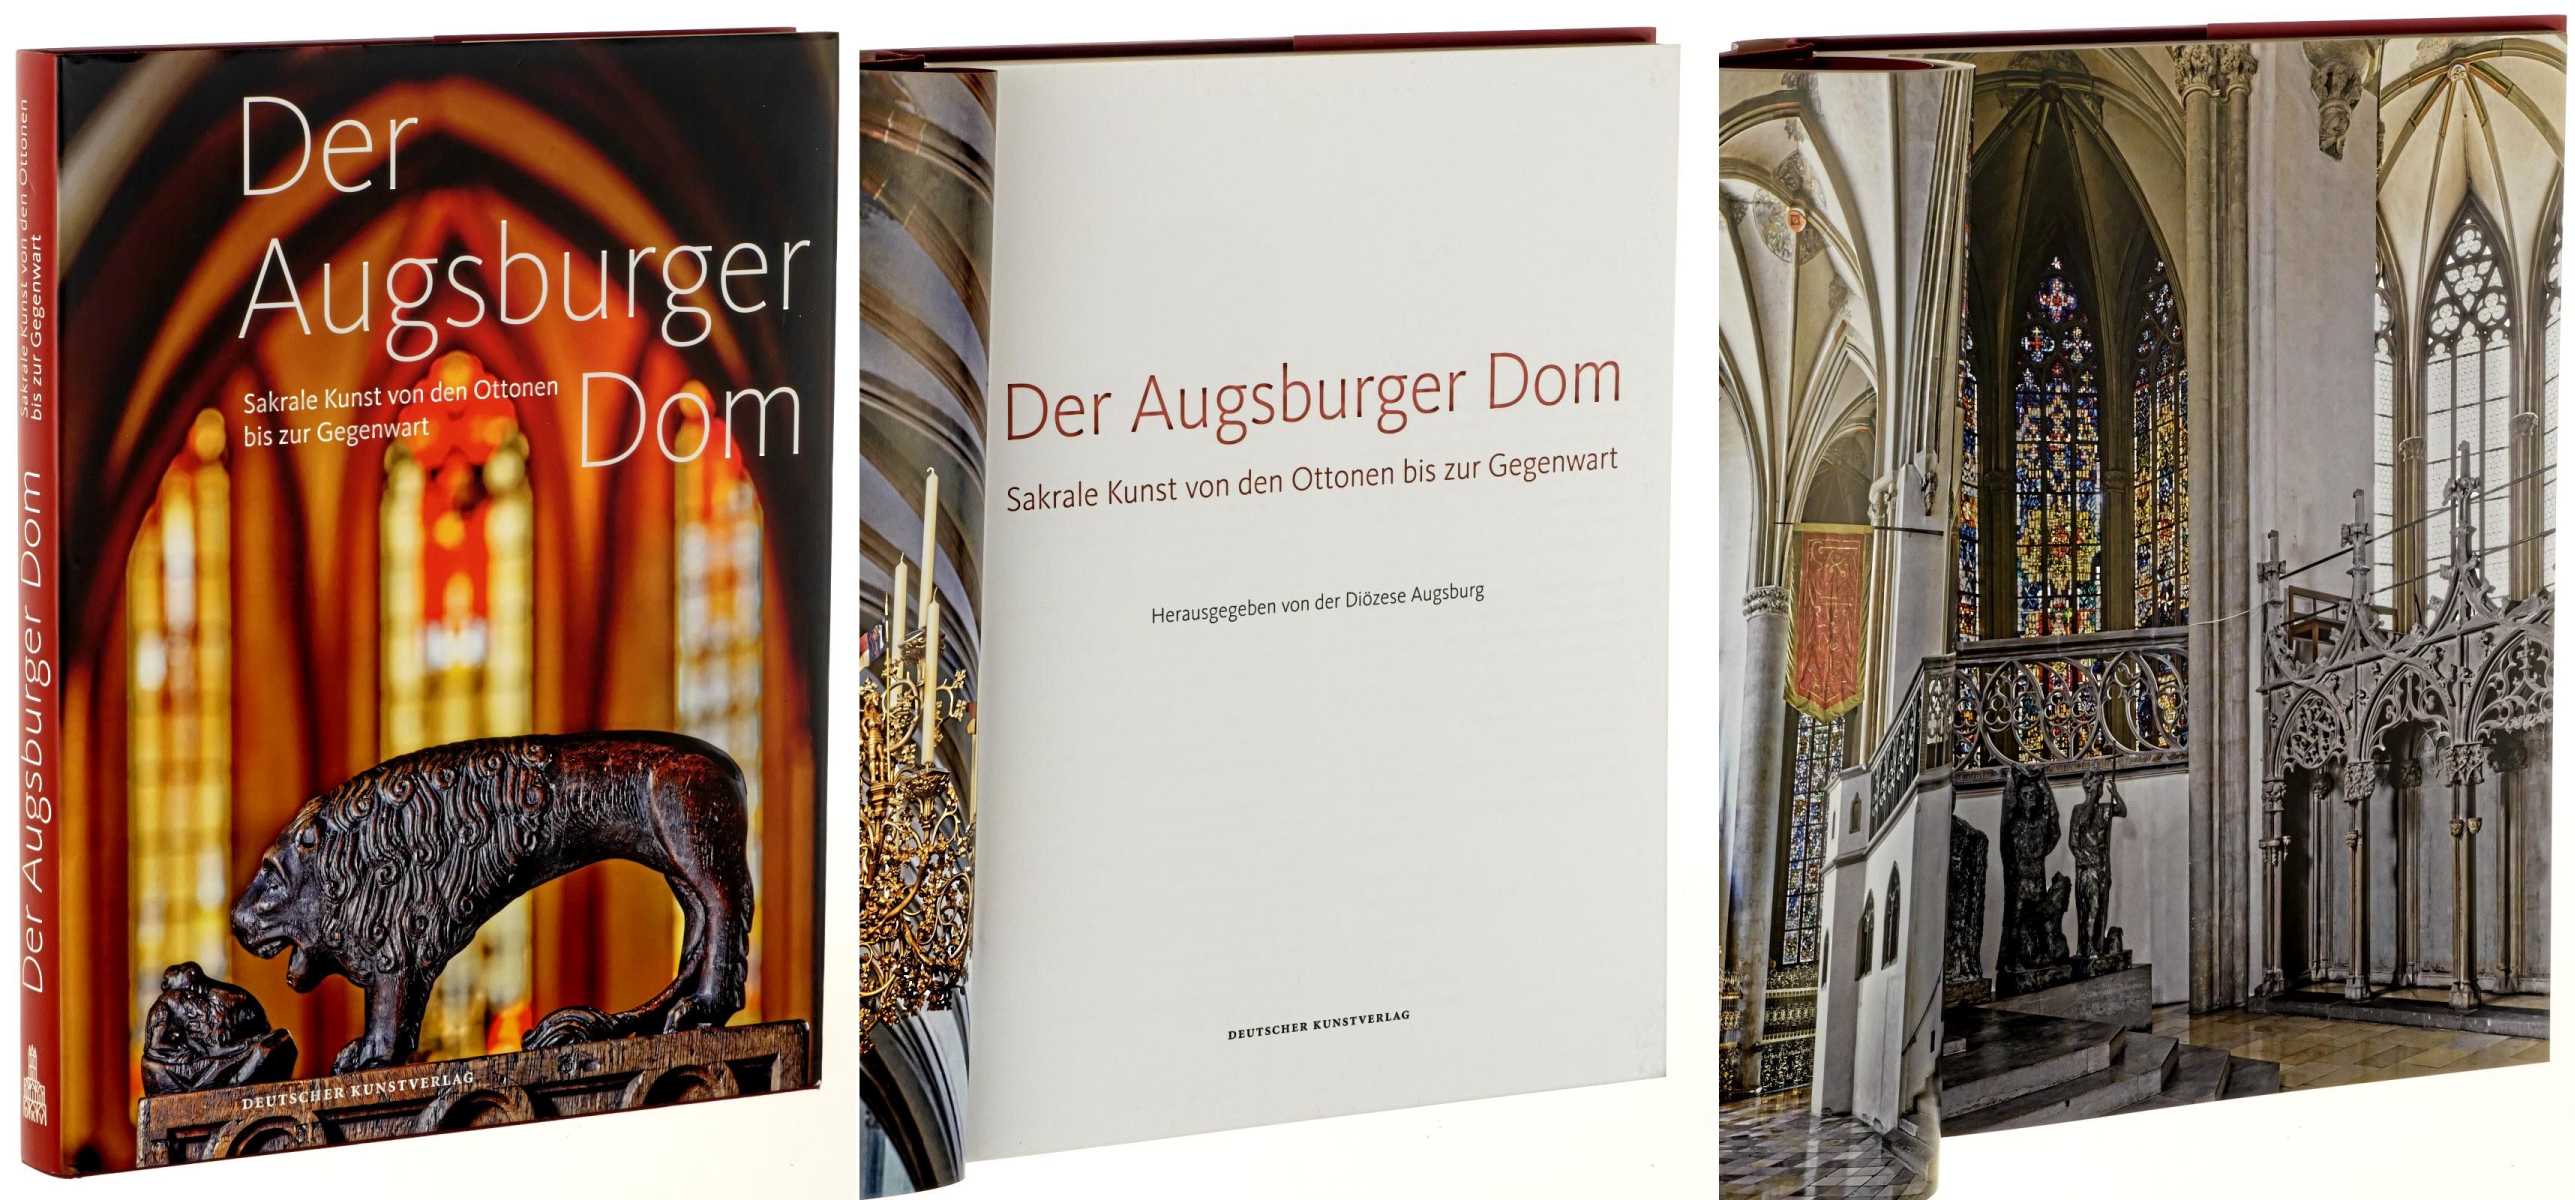   Der Augsburger Dom. Sakrale Kunst von den Ottonen bis zur Gegenwart. Hrsg.von der Diözese Augsburg. 